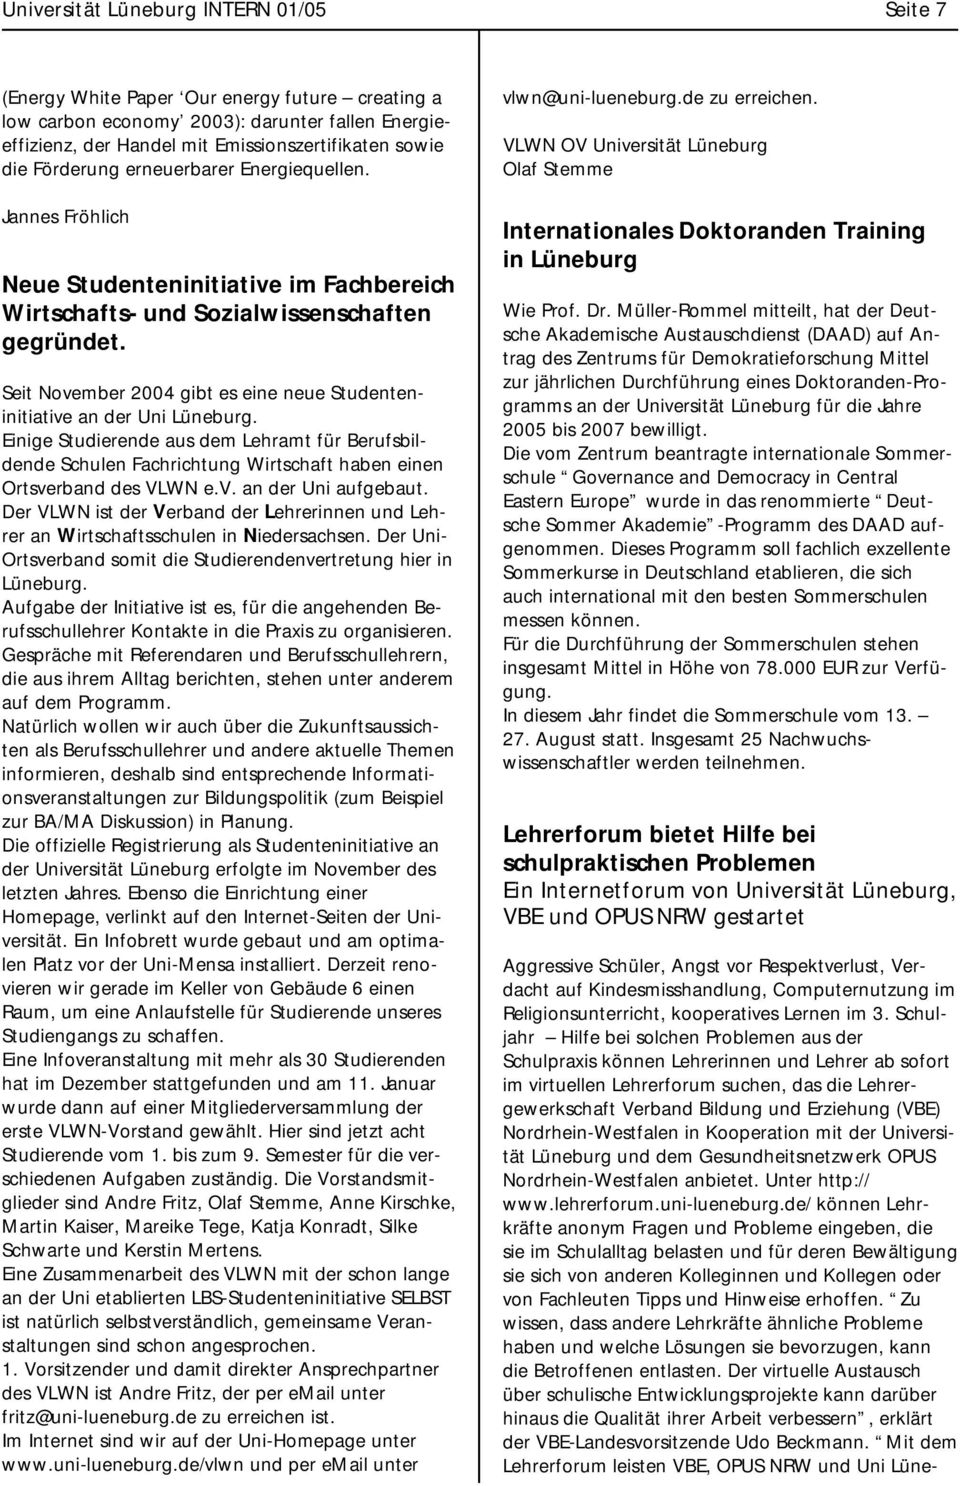 Seit November 2004 gibt es eine neue Studenteninitiative an der Uni Lüneburg. Einige Studierende aus dem Lehramt für Berufsbildende Schulen Fachrichtung Wirtschaft haben einen Ortsverband des VLWN e.